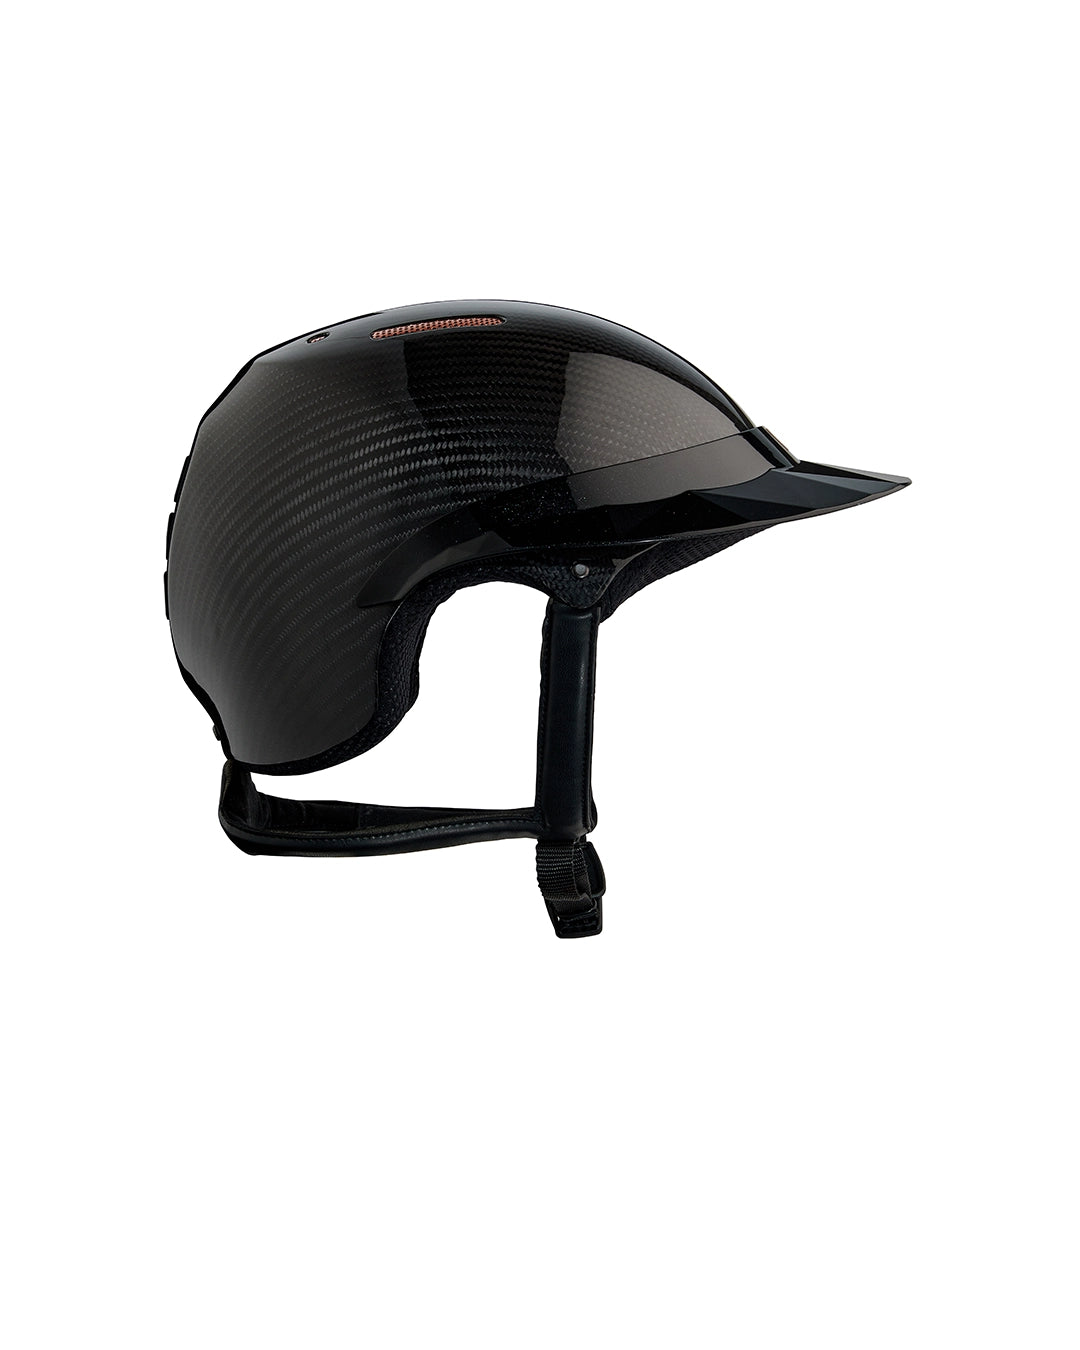 GRAVITY XP Carbon Glow small visor